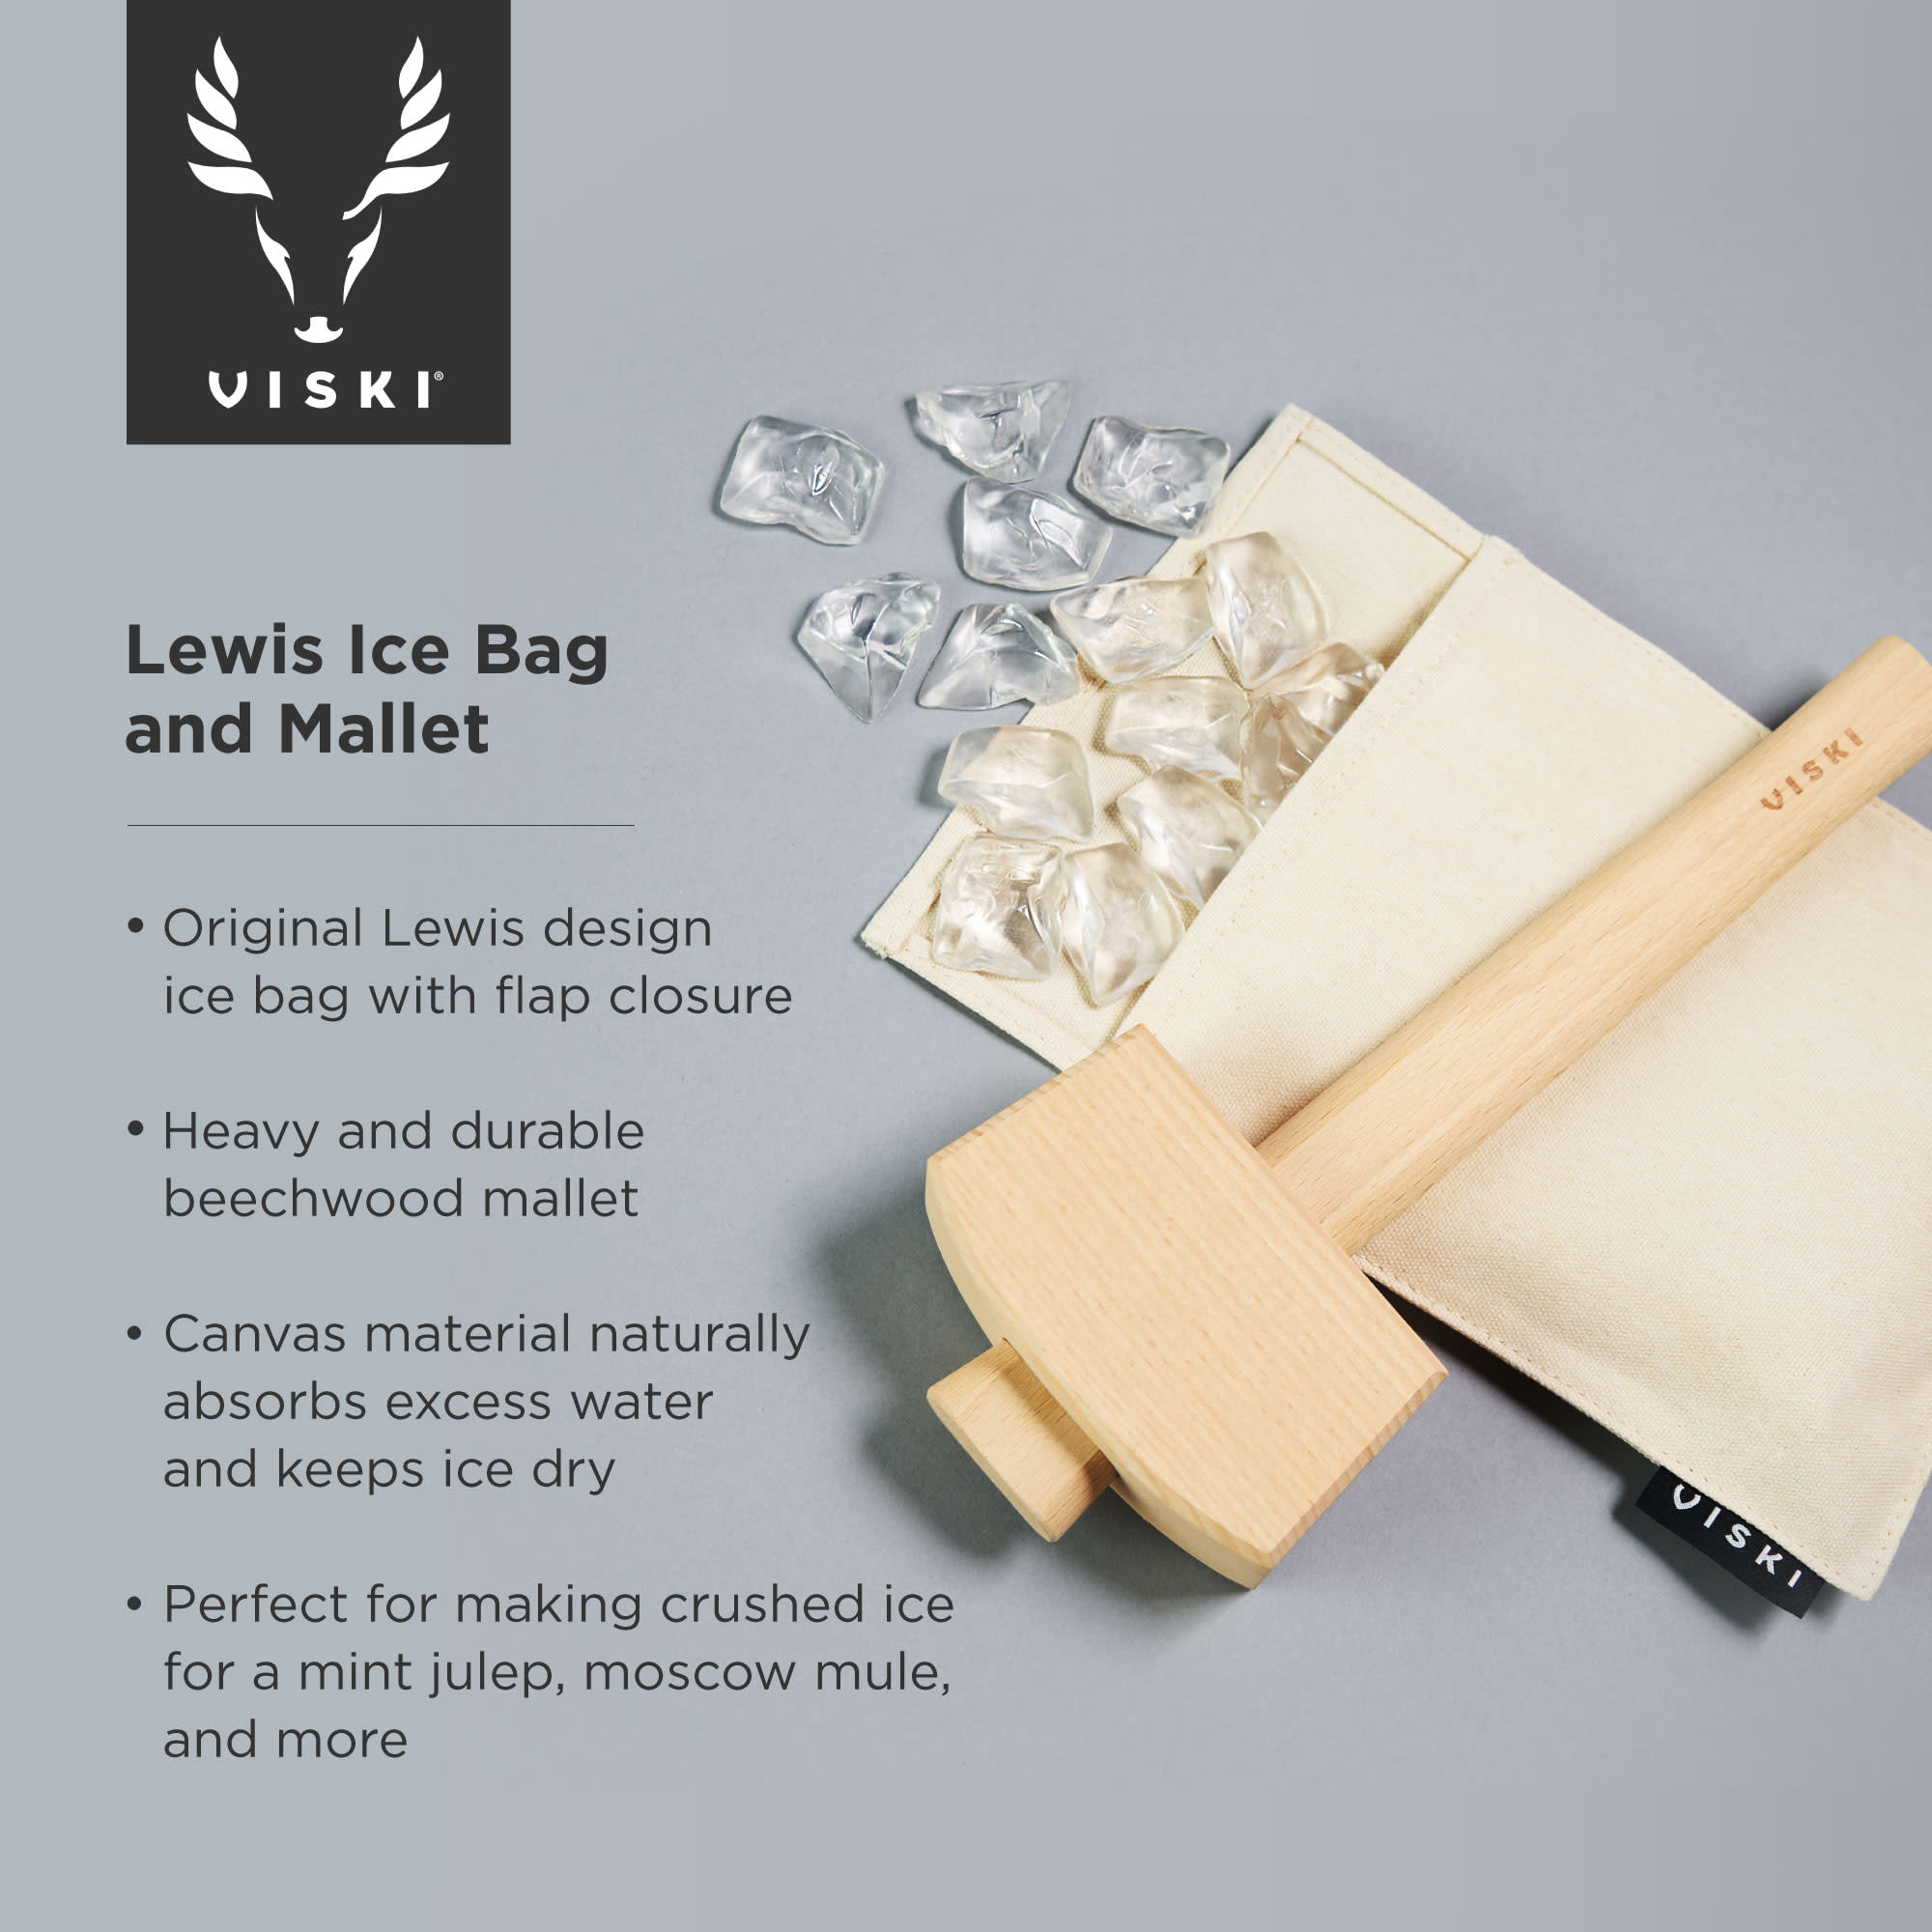 Viski Professional Lewis Bag and Mallet Bartender Kit & Bar Tools - Ice Crusher - image 3 of 11